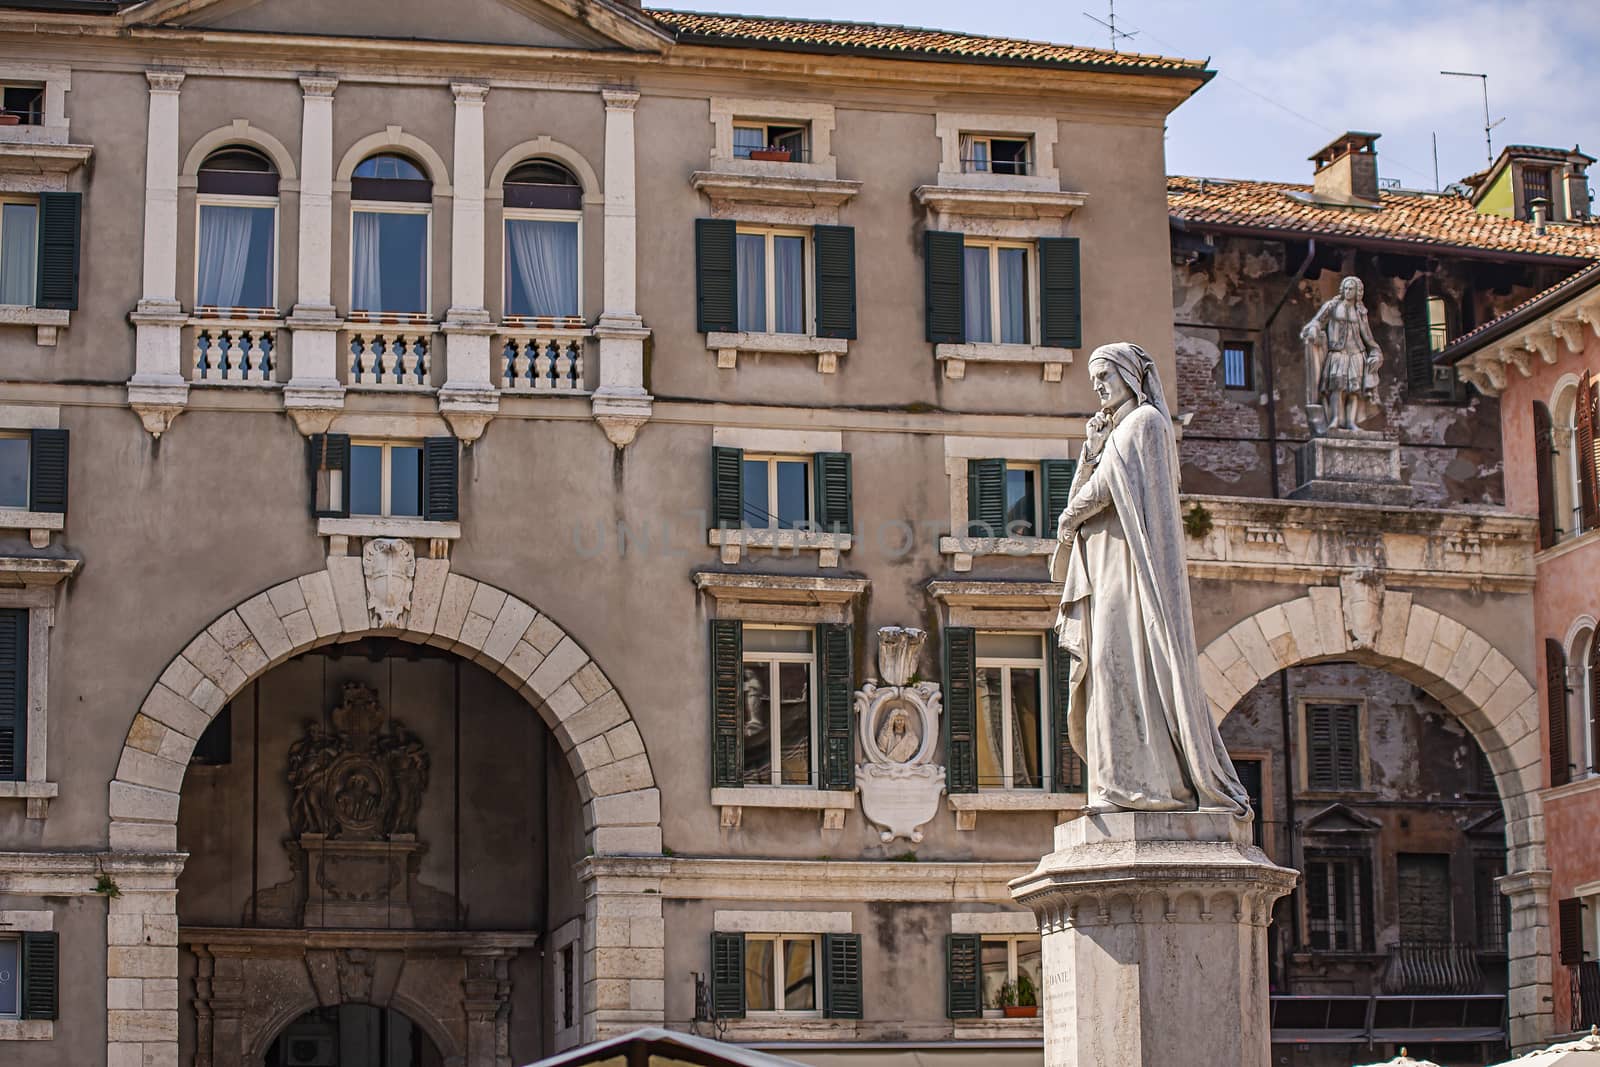 Verona's Dante statue 4 by pippocarlot